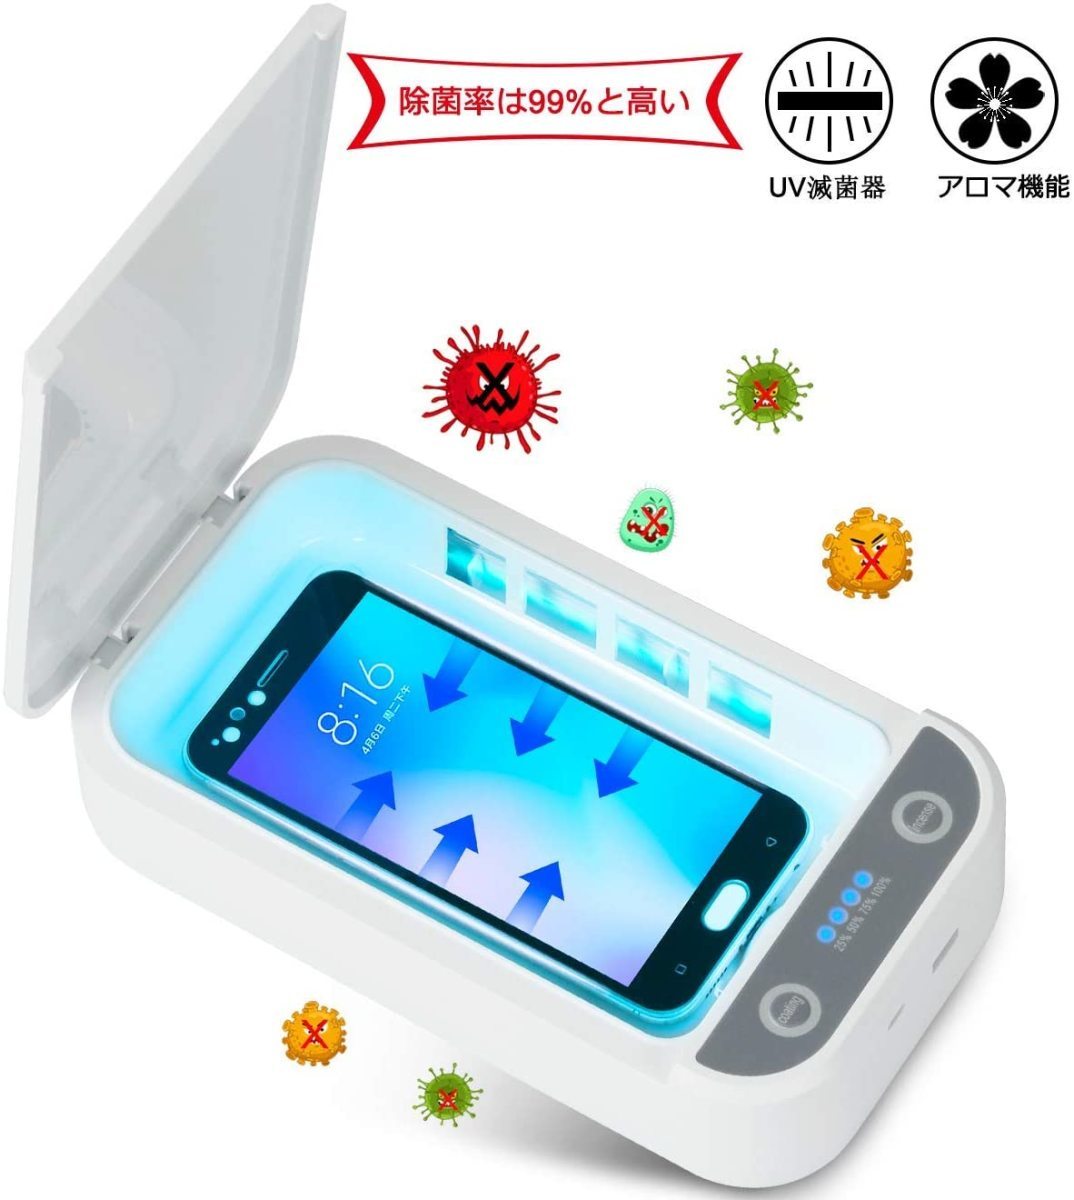 スマホ 除菌ボックス マスク 除菌ケース UV携帯電話除菌器 99%細菌消滅 USB充電機能 直営ストア